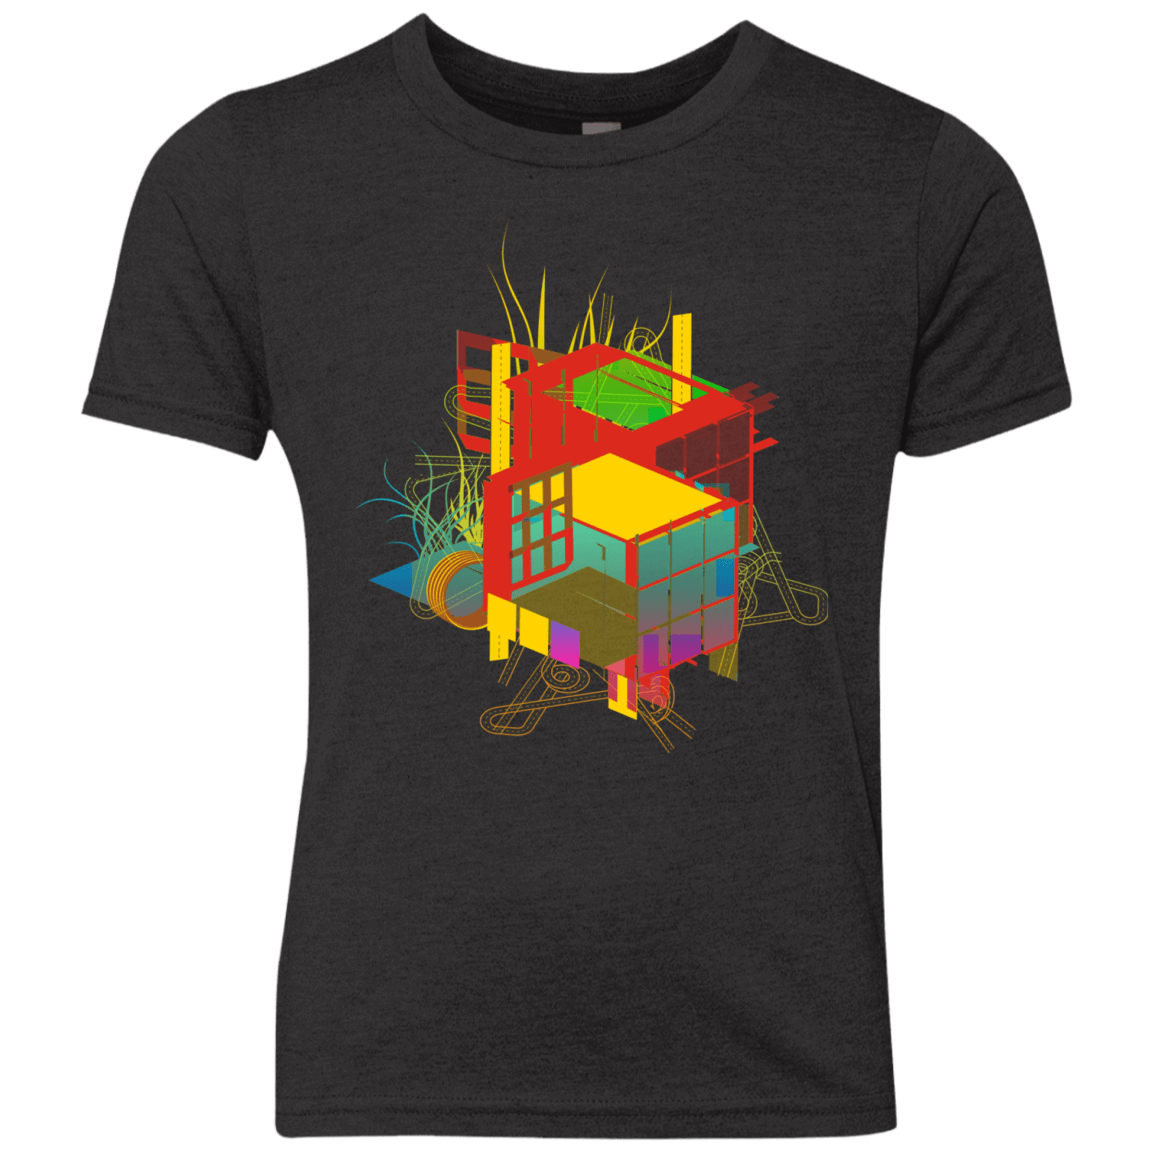 T-Shirts Vintage Black / YXS Rubik's Building Youth Triblend T-Shirt